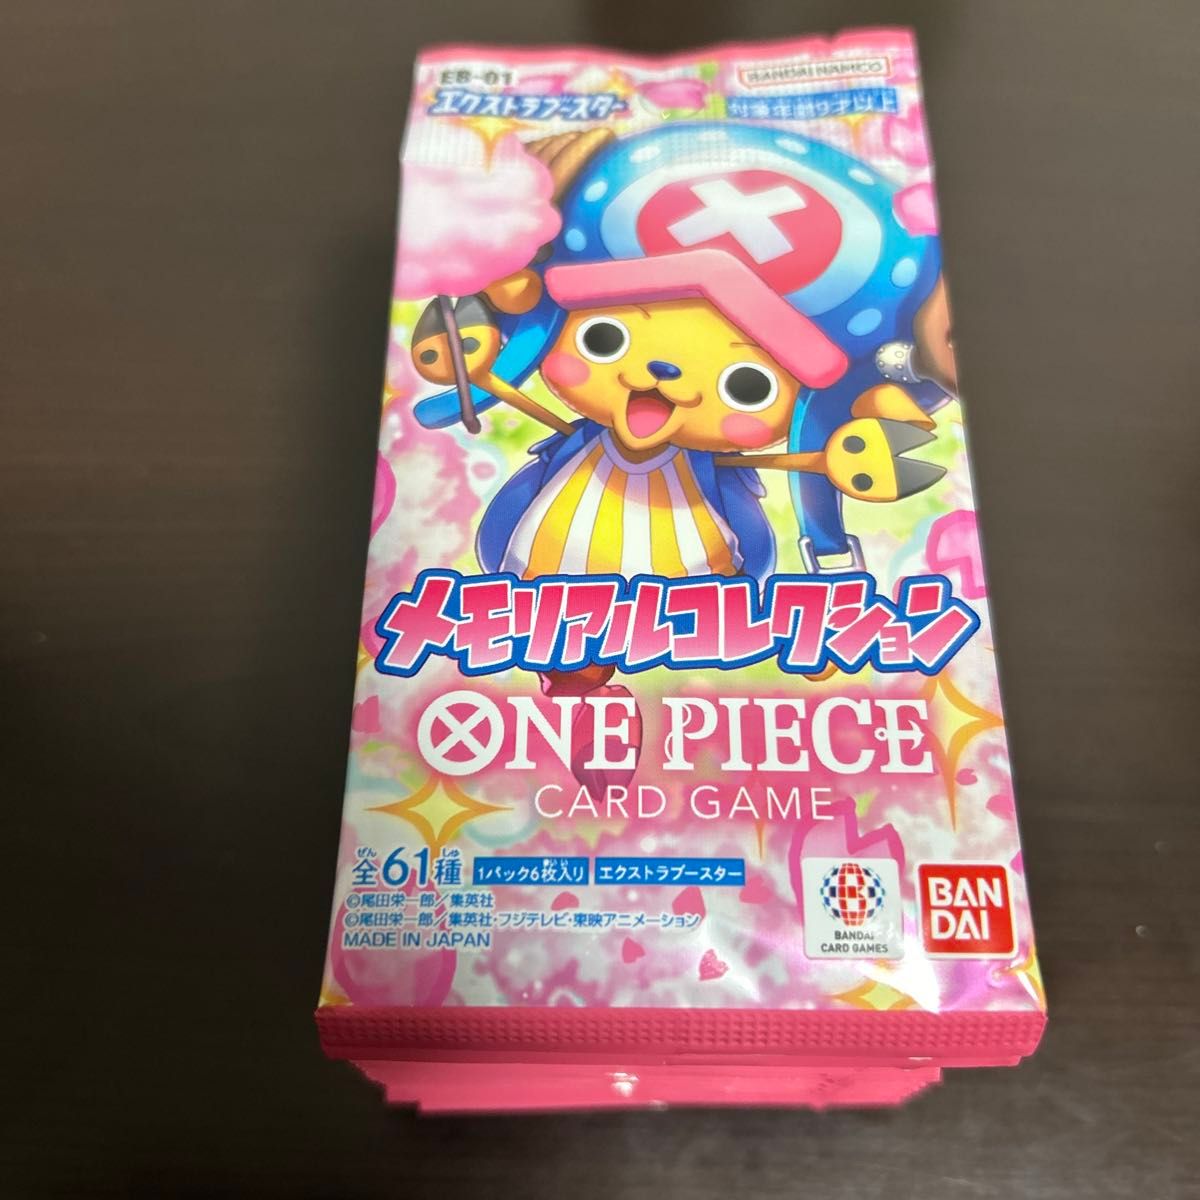 ONE PIECE カードゲーム エクストラブースター メモリアルコレクション 【EB-01】1BOX分 24パック